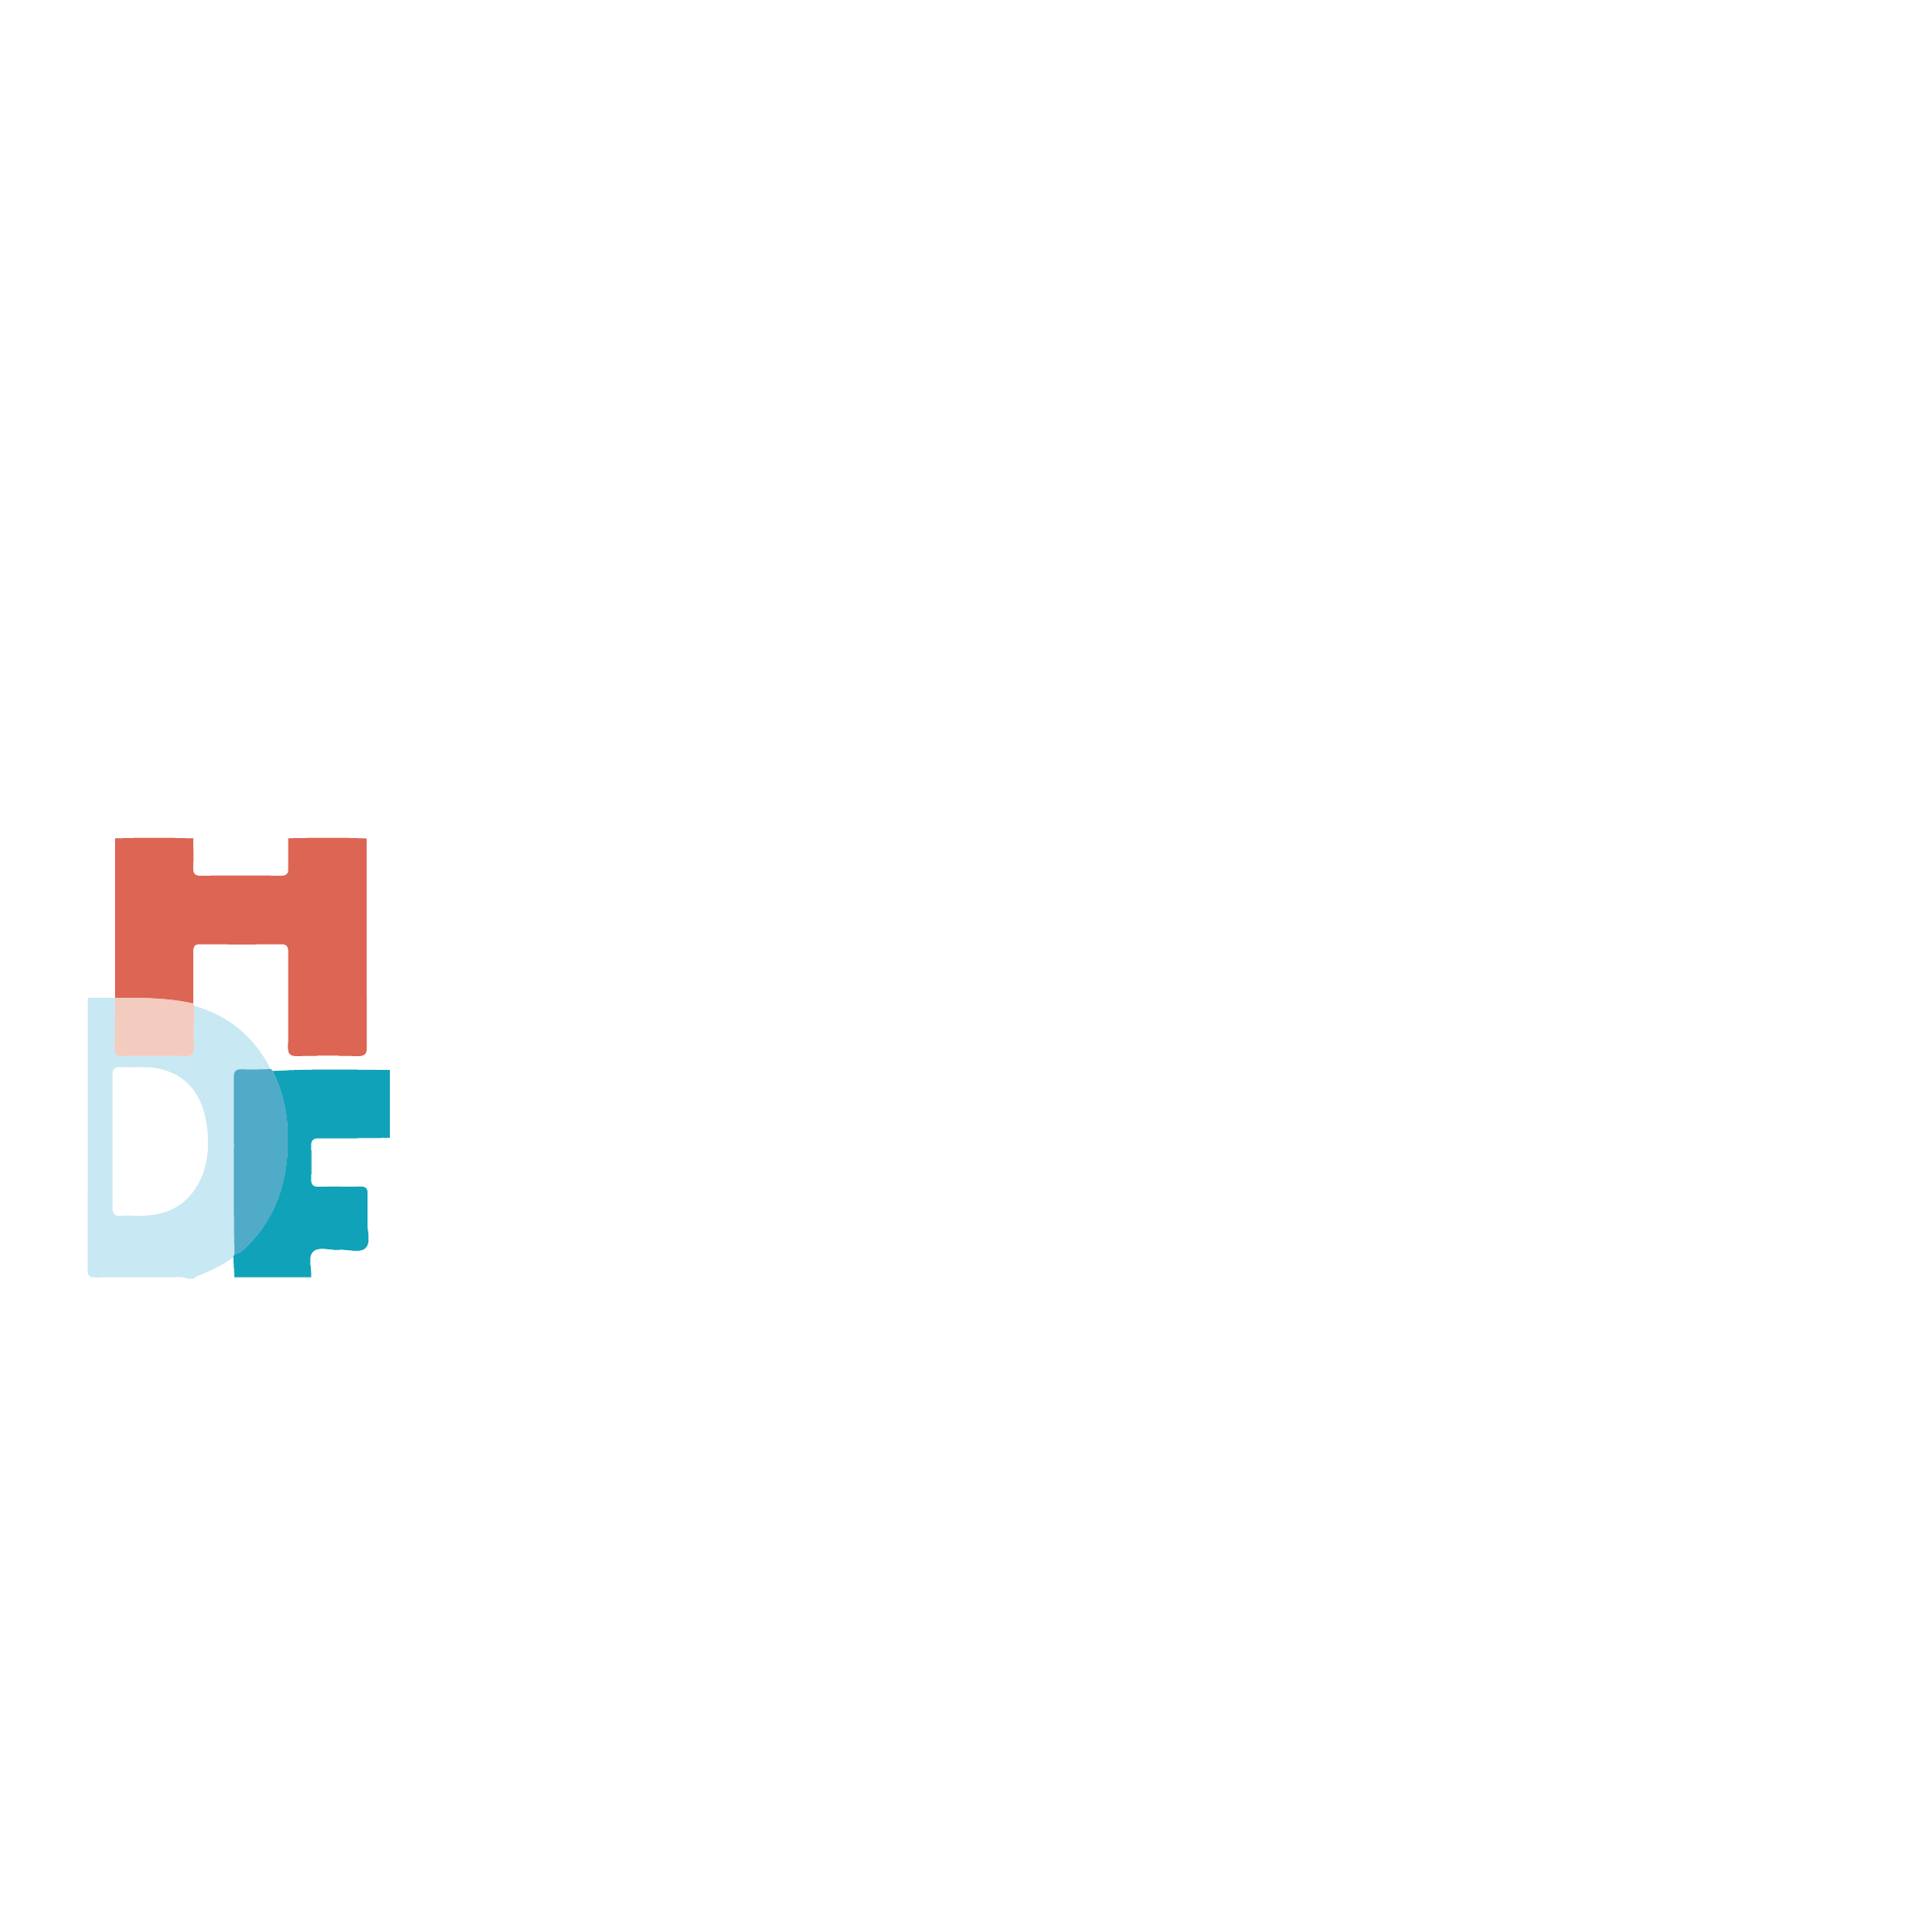 1 HDF logo